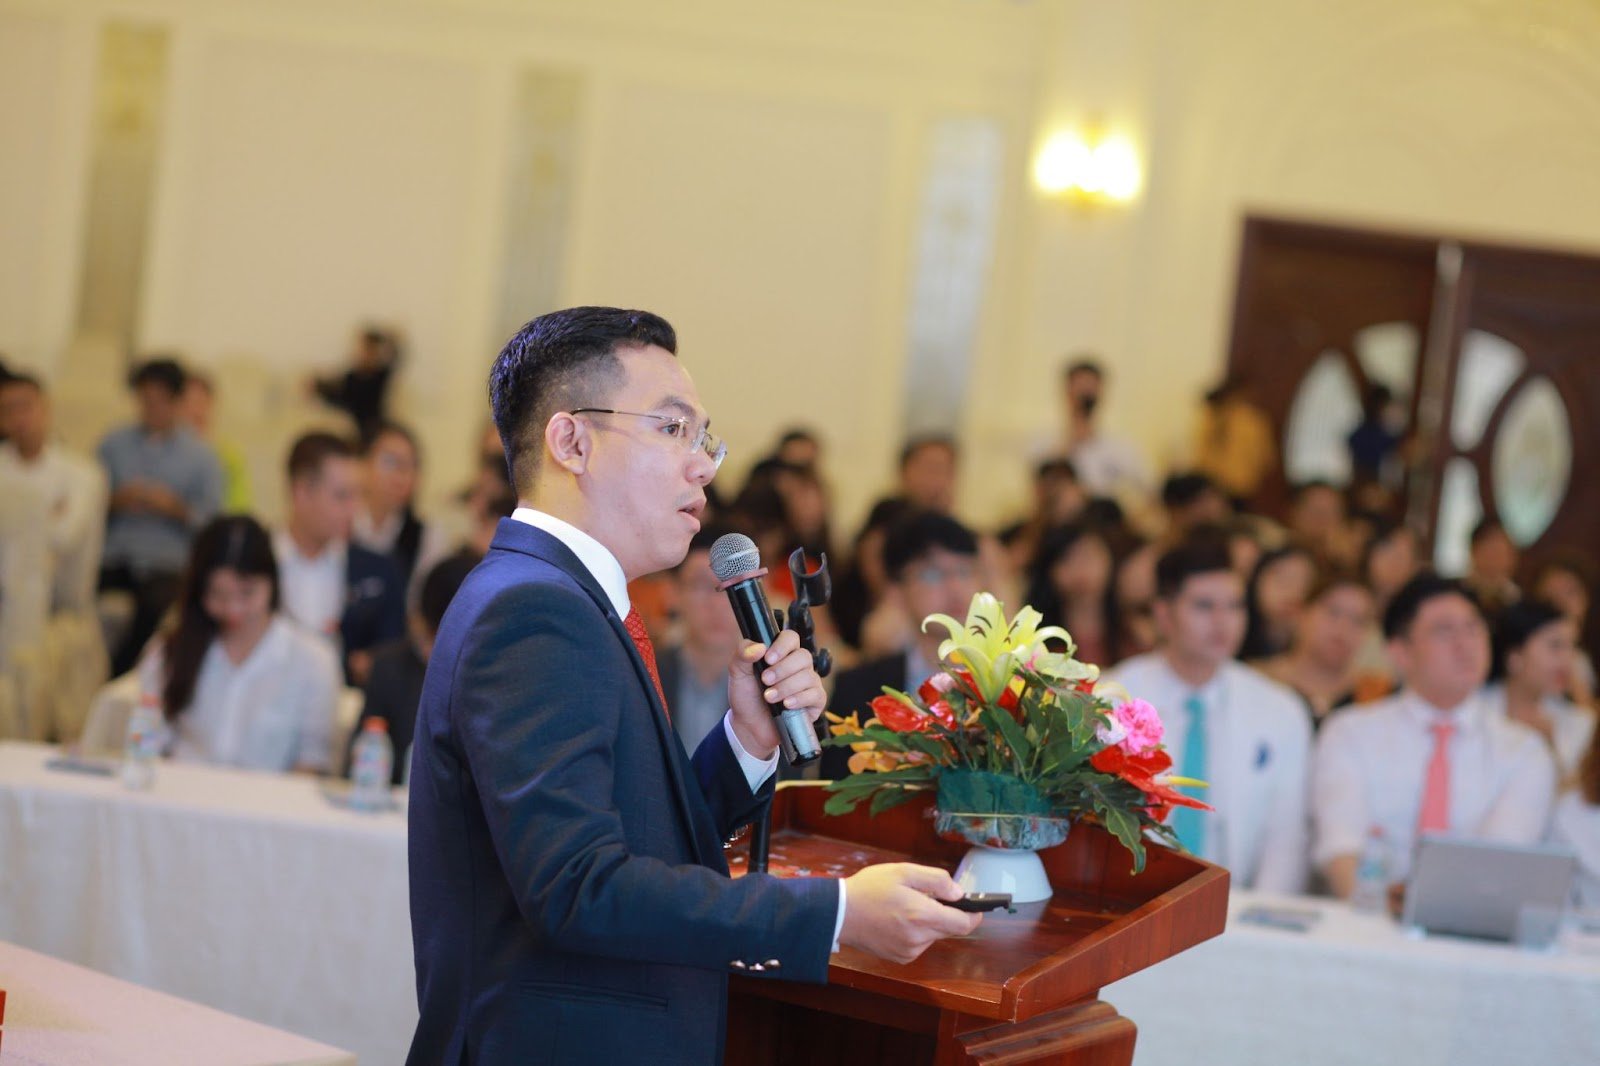 Bác sĩ thẩm mỹ Nguyễn Quốc Định tham dự rất nhiều hội thảo quốc tế về phẫu thuật thẩm mỹ